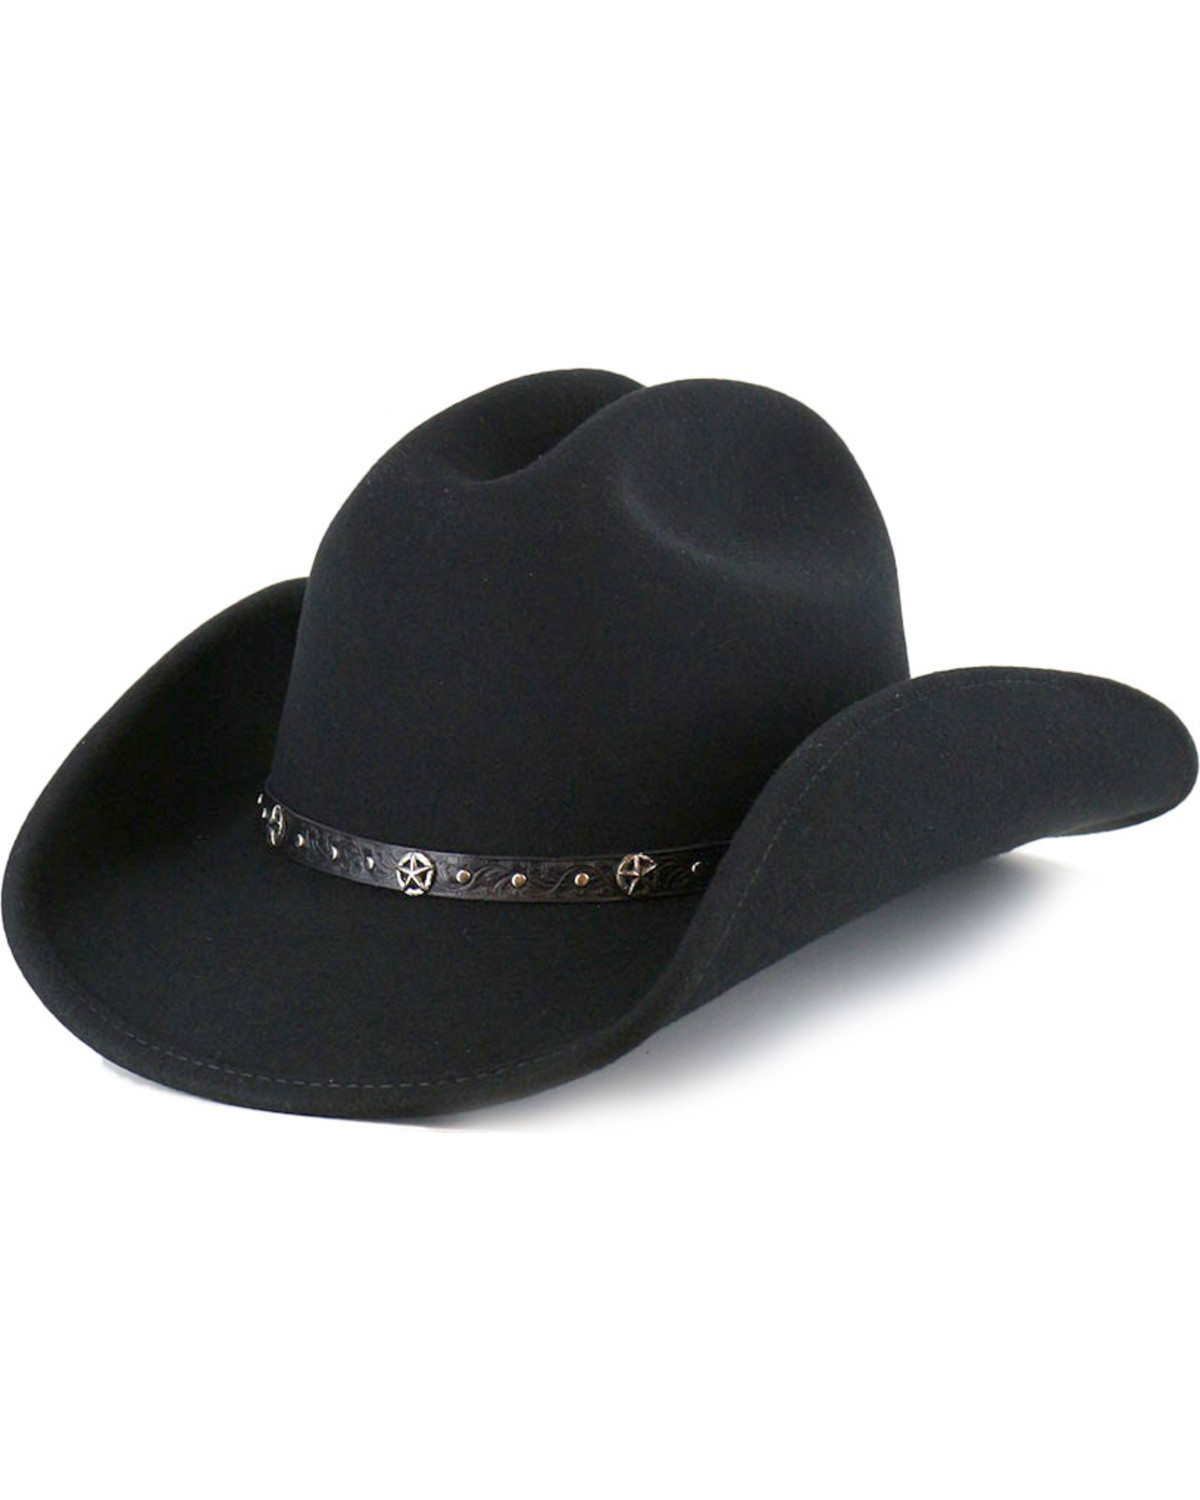 Cody James Felt Cowboy Hat